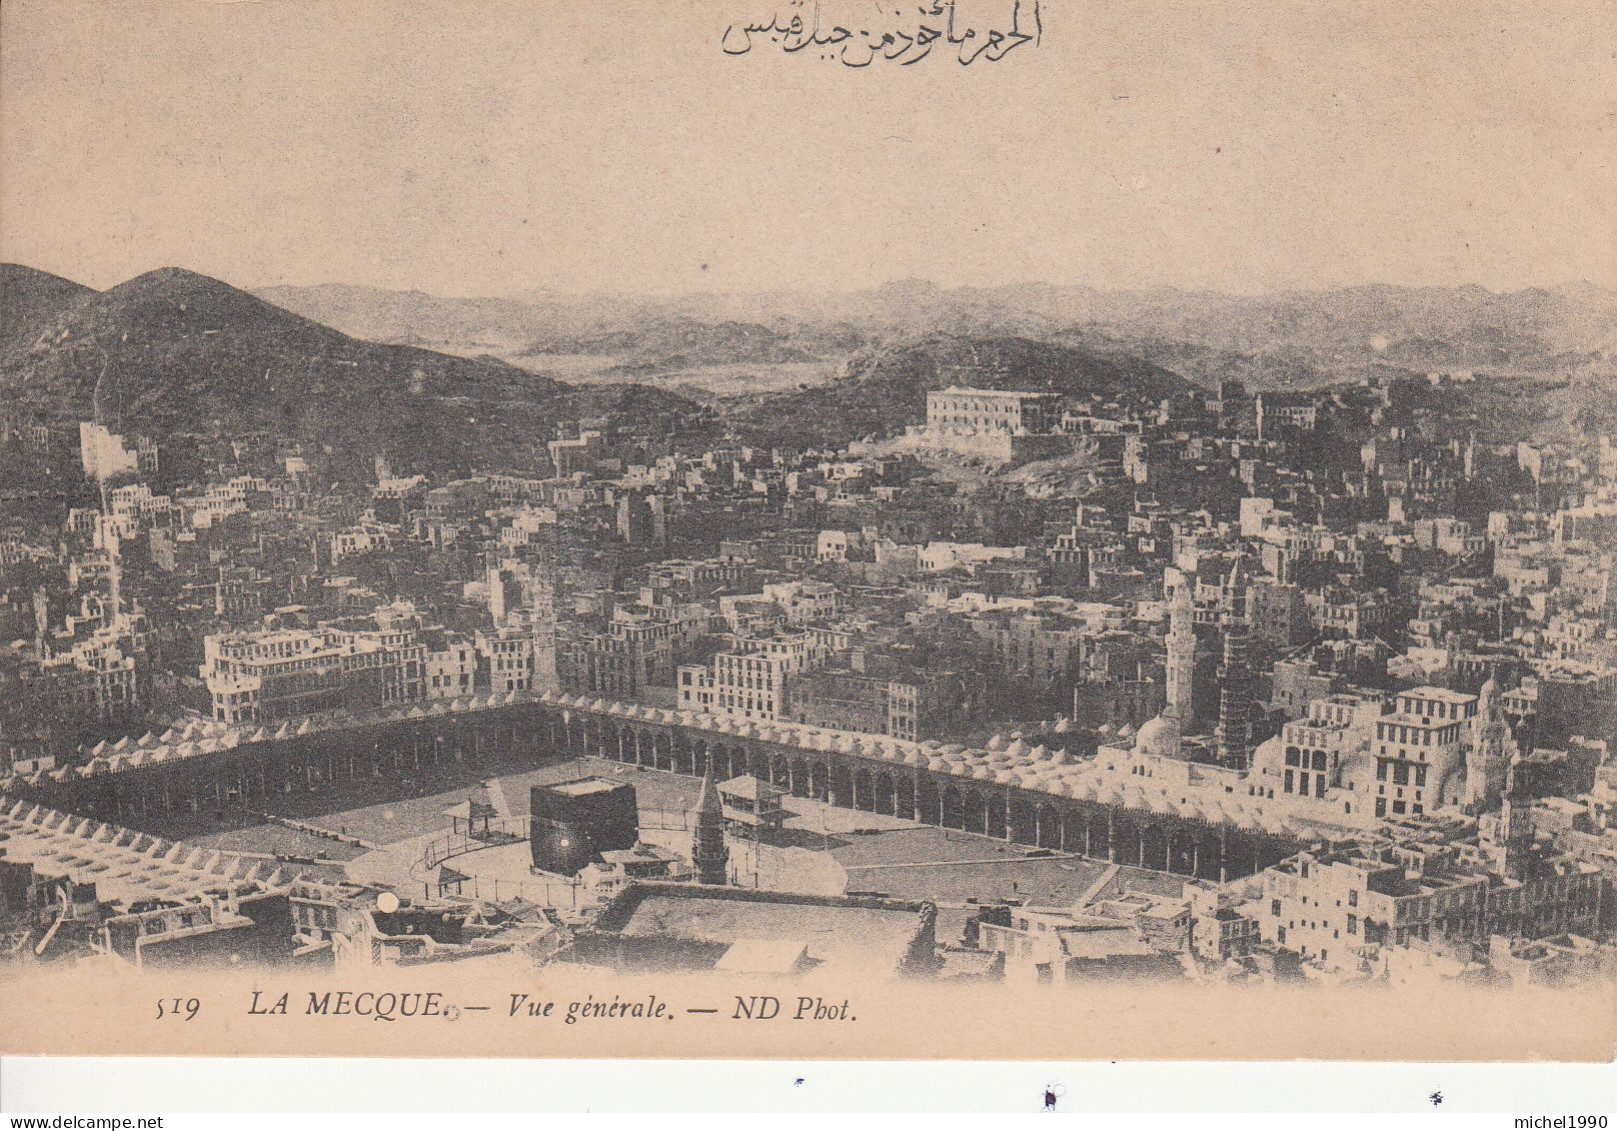 La Mecque / Mecca : Deux Cartes Postales Années 1920's / Two Postcards Circa 1920's - Saudi Arabia